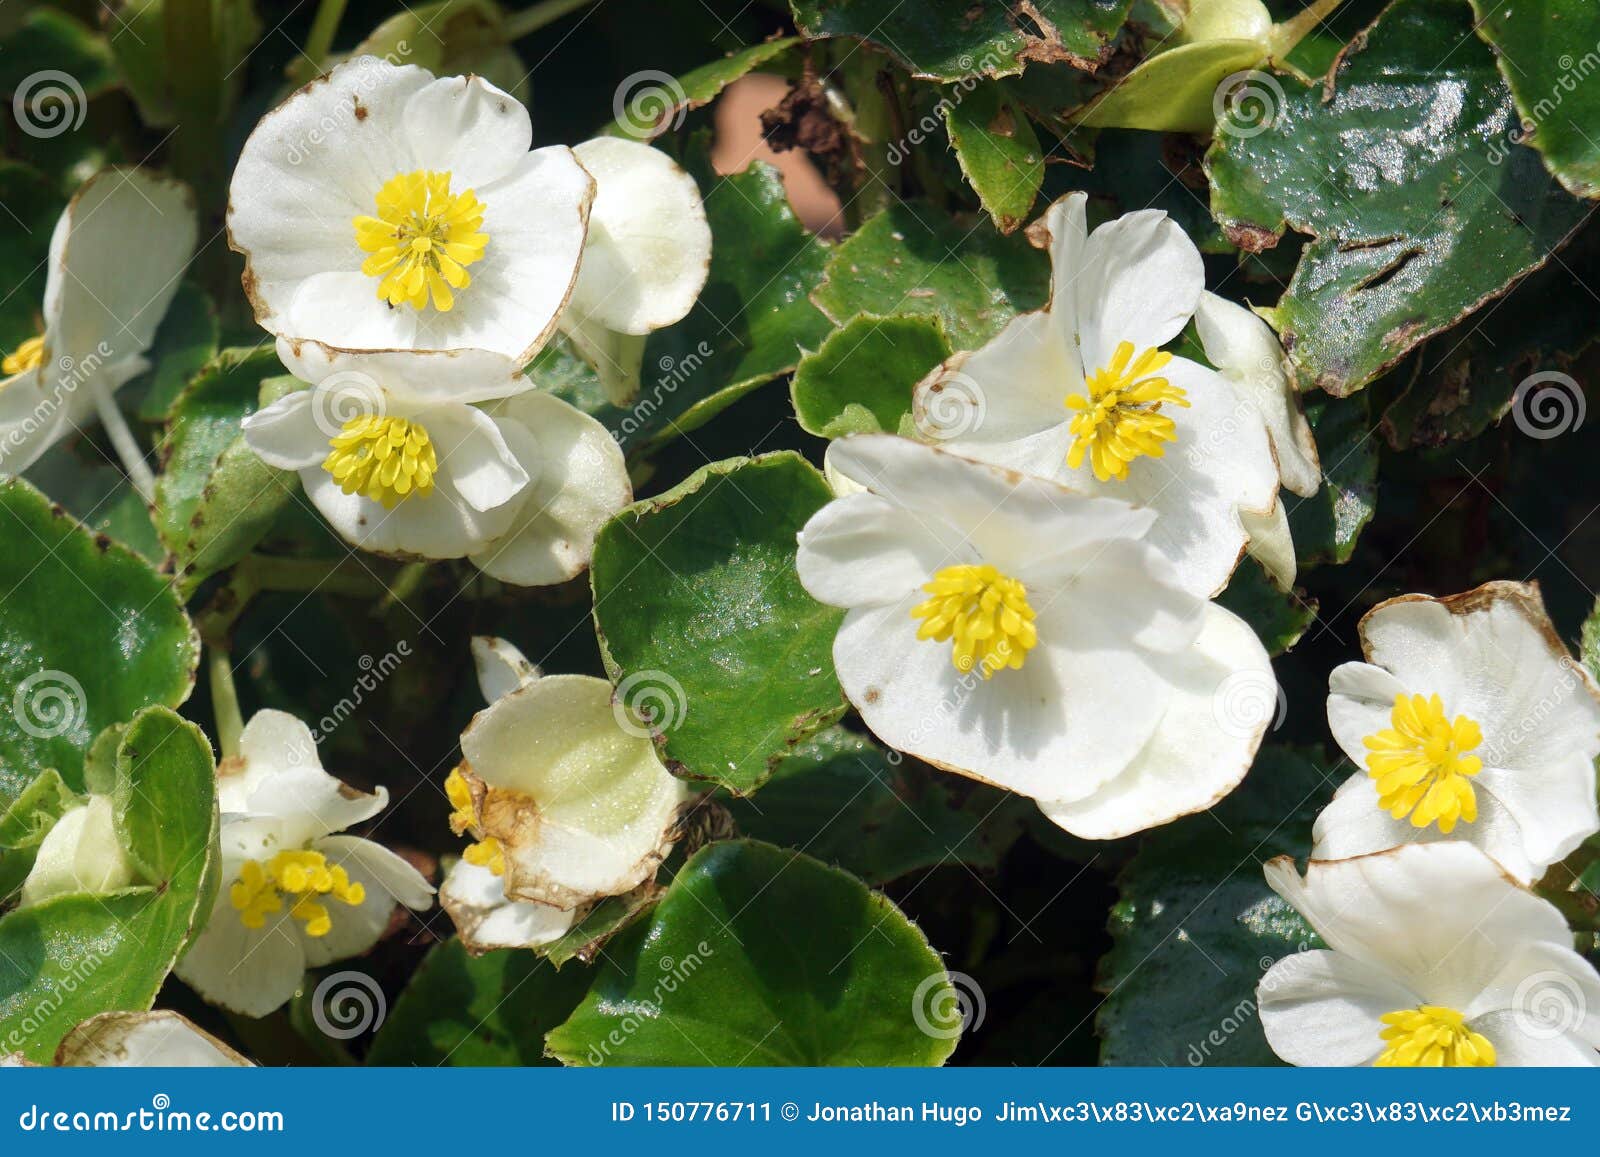 Fleurs blanches et jaunes image stock. Image du sauvage - 150776711